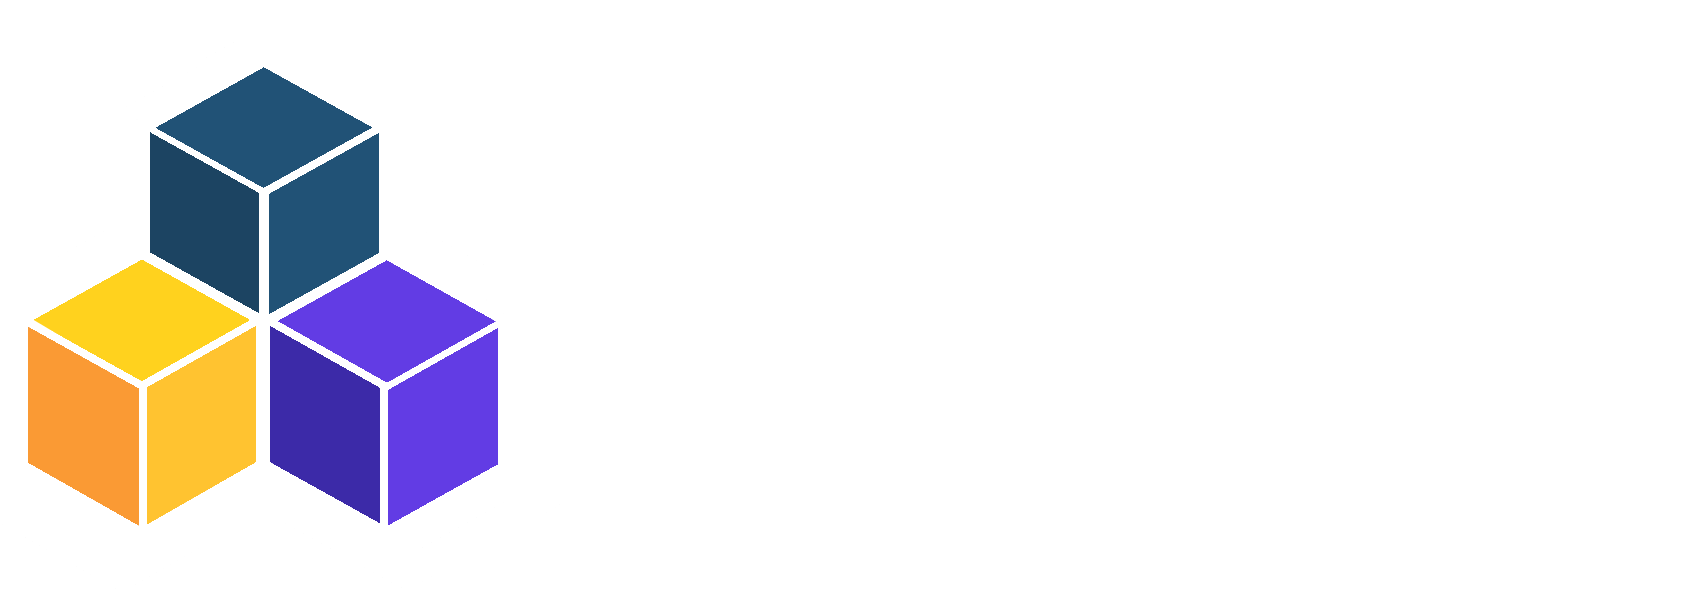 Cdkday Logo Dark 